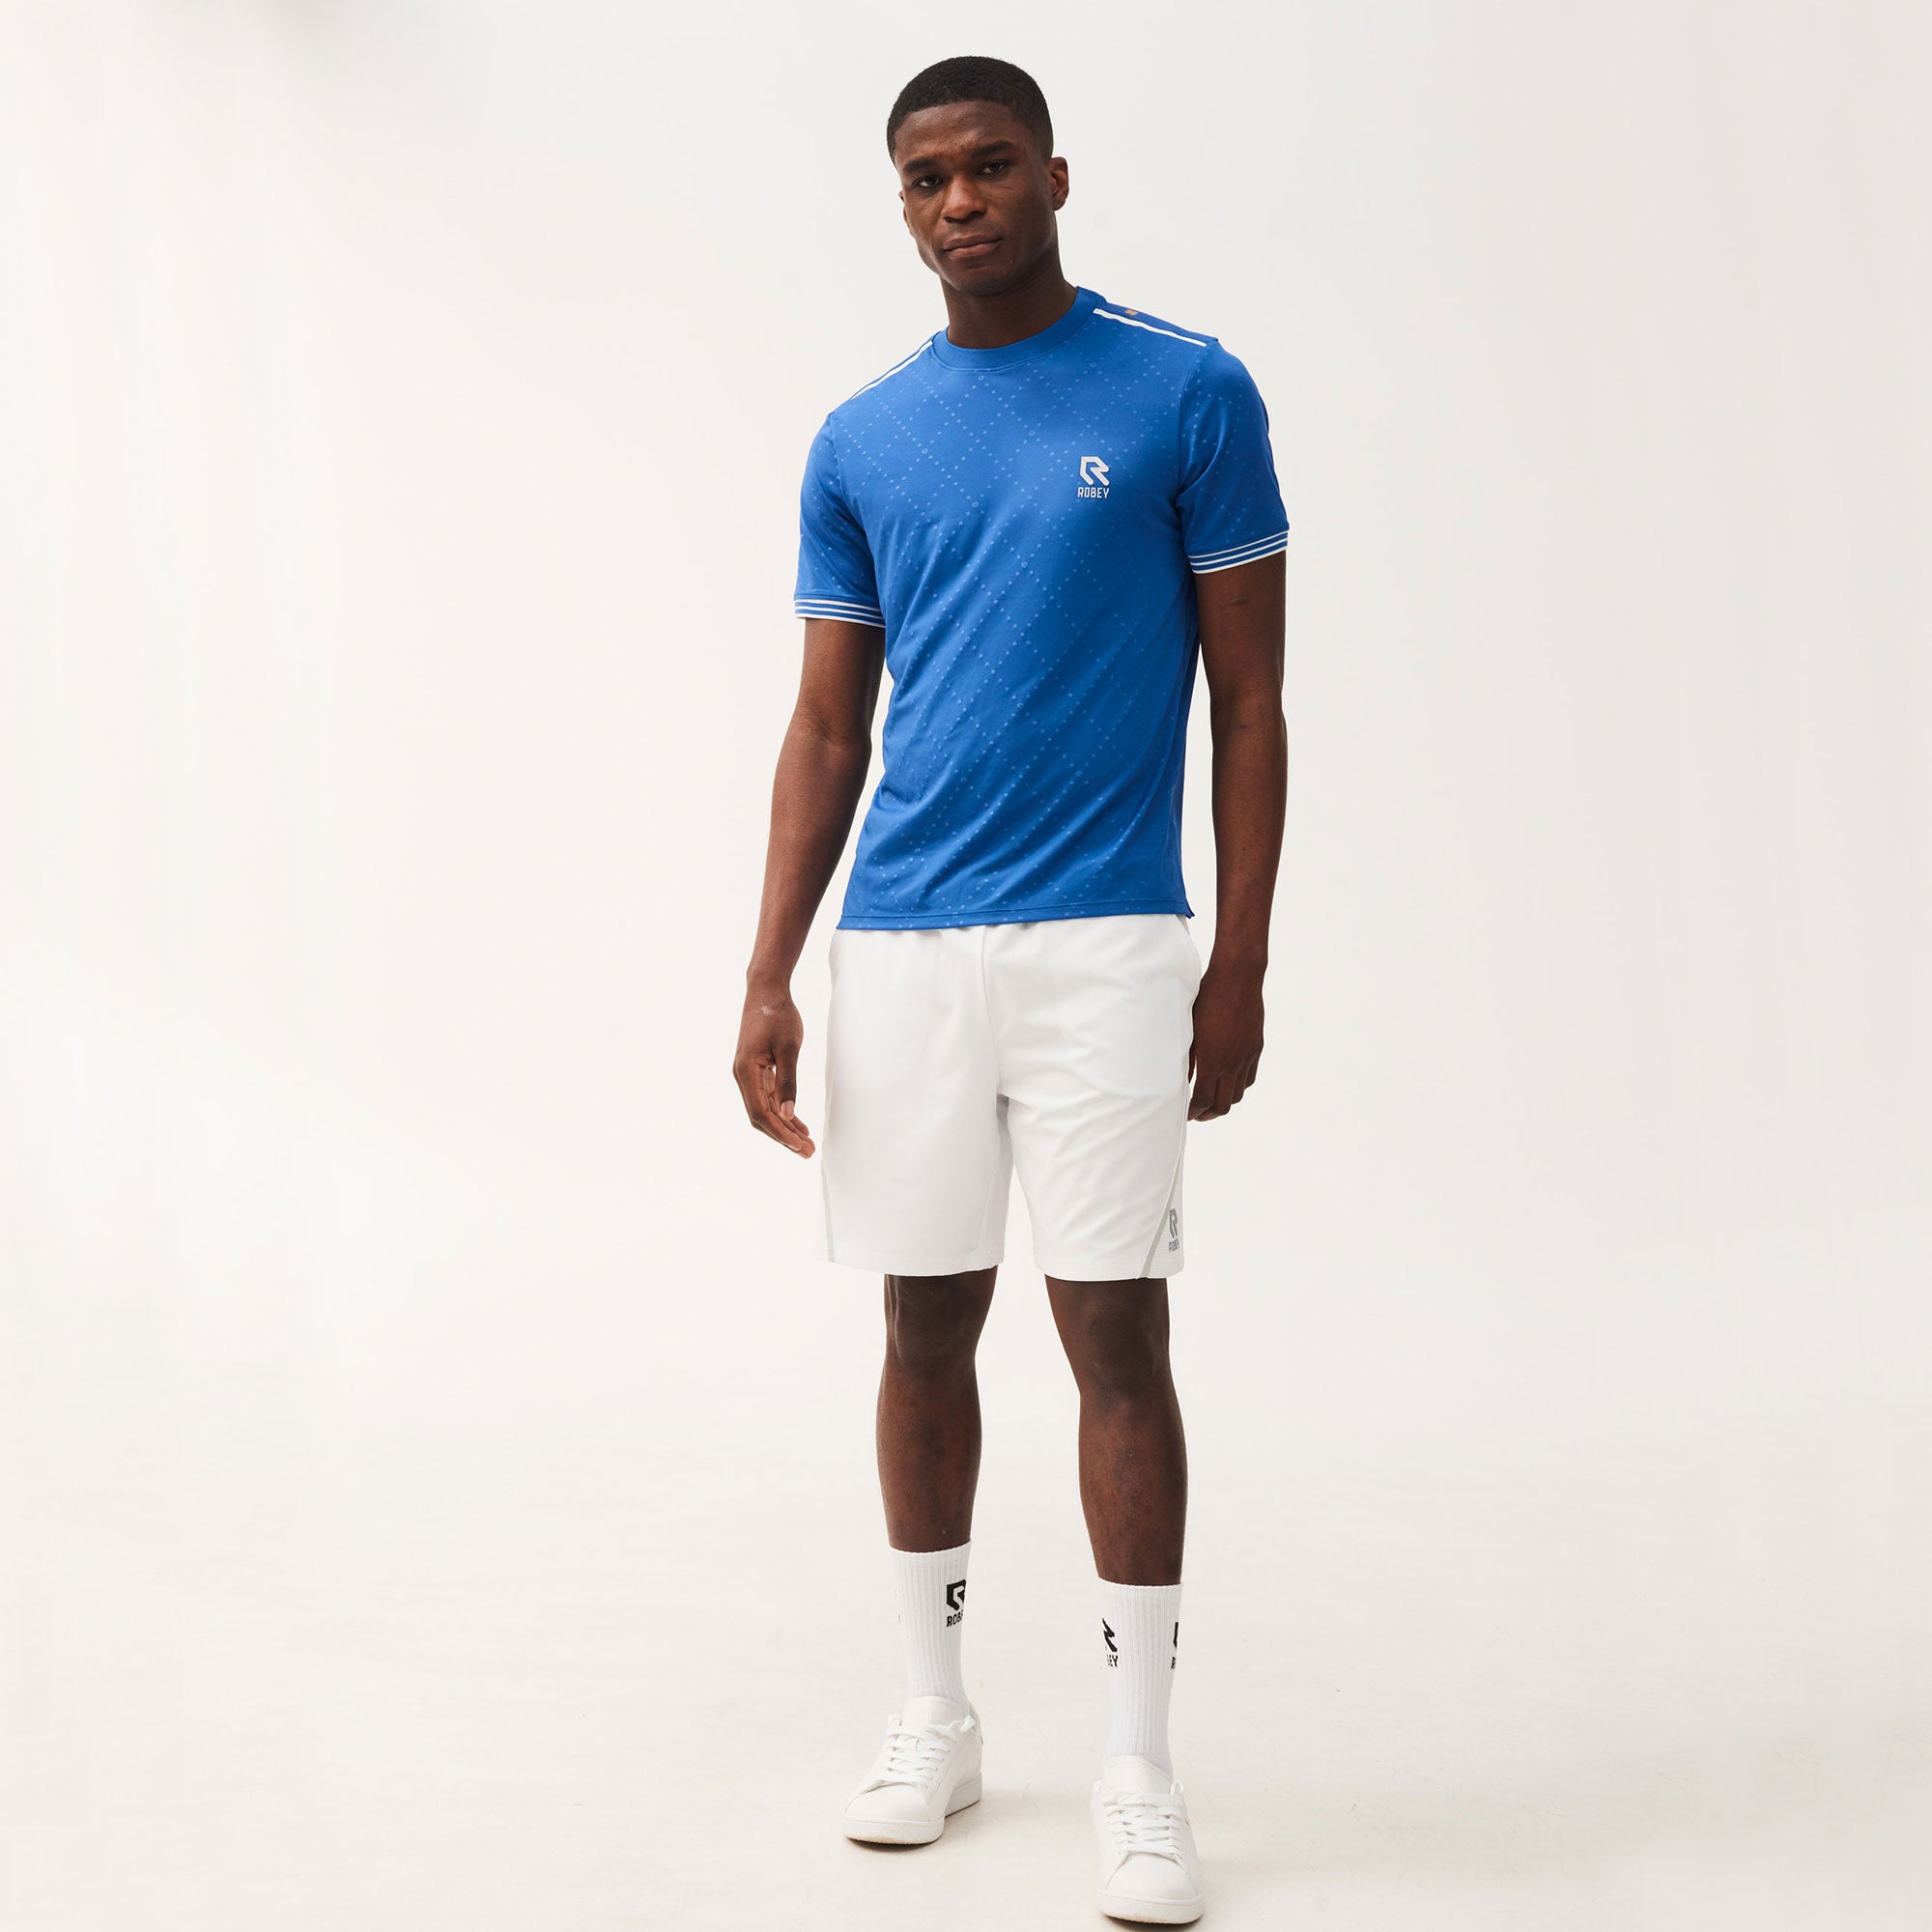 Robey Grip Men's 9-Inch Tennis Shorts White (4)